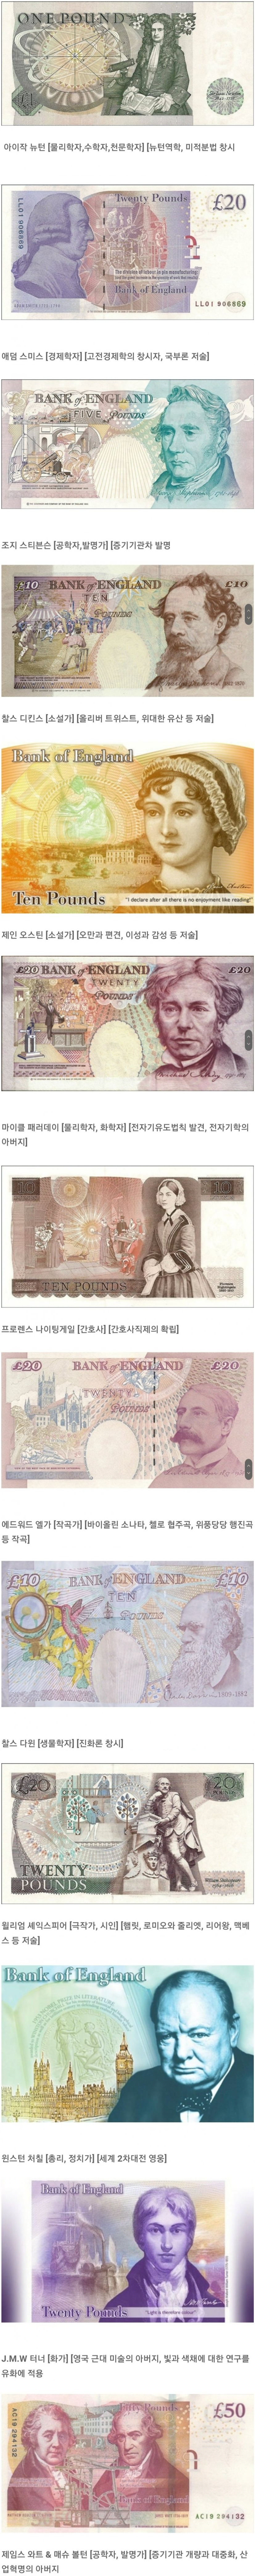 영국 지폐 인물들